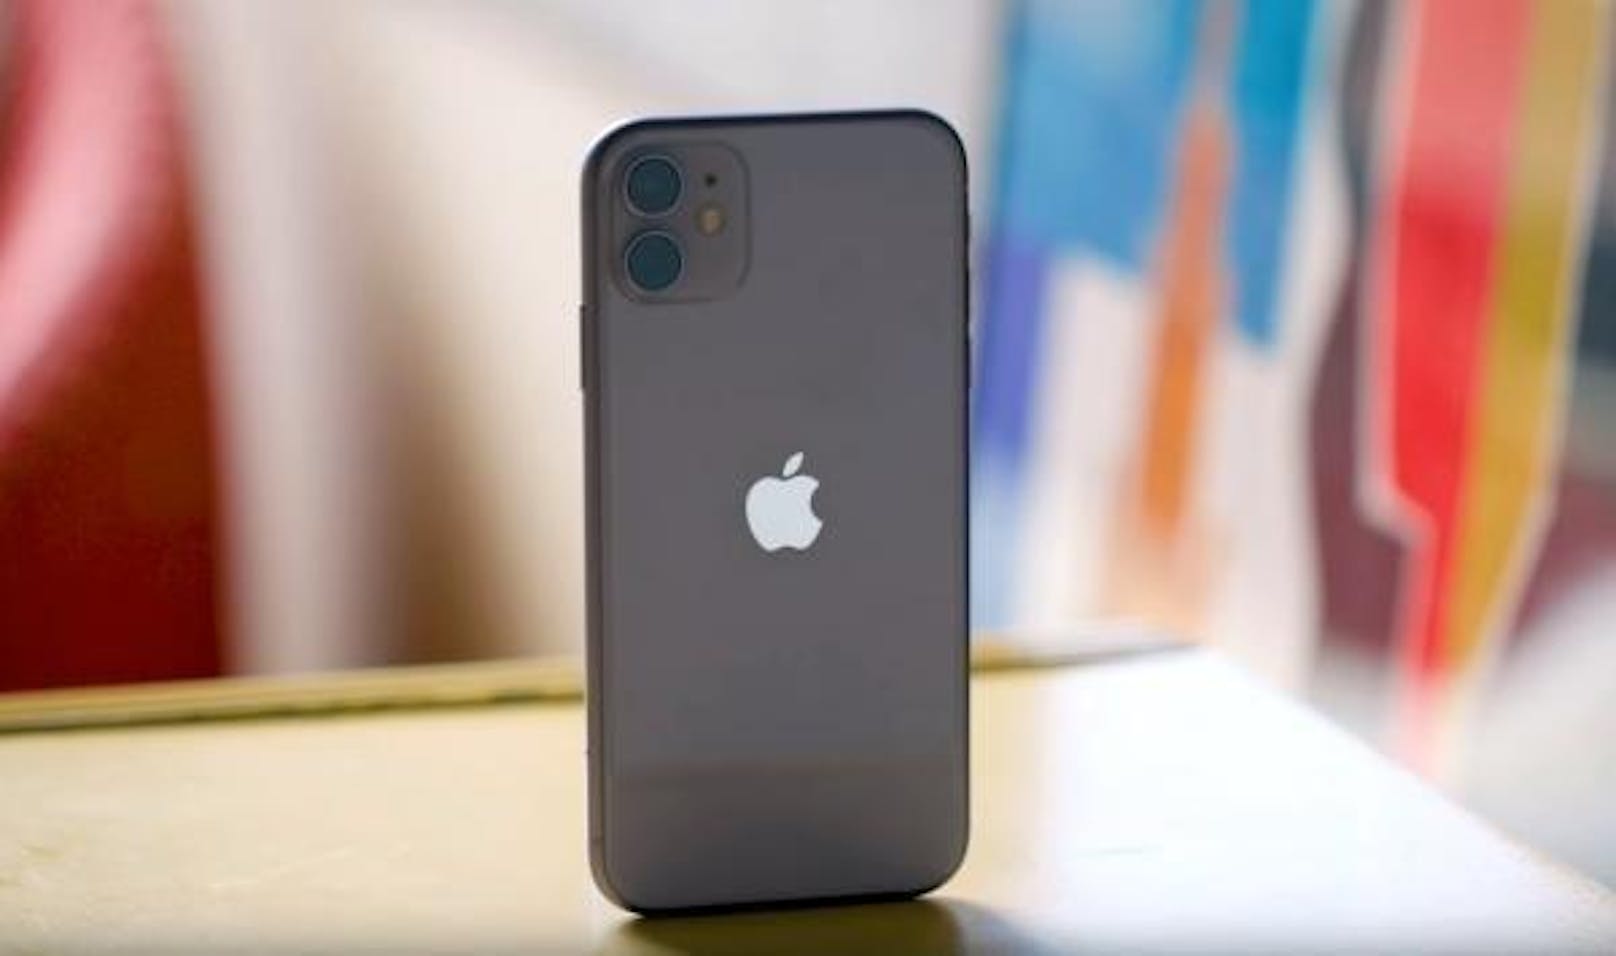 "Ja, die Geräte sind teuer. Und ja, ich denke, die meisten Leute sollten wahrscheinlich ein iPhone 11 statt eines iPhone 11 Pro kaufen. Es bietet fast die gleichen Funktionen, kostet aber 300 Dollar weniger. Allerdings ist das Pro den Aufpreis wert, um die beste Kamera und das beste Display im iPhone 11 Pro zu bekommen", sagt Patel im Testbericht.